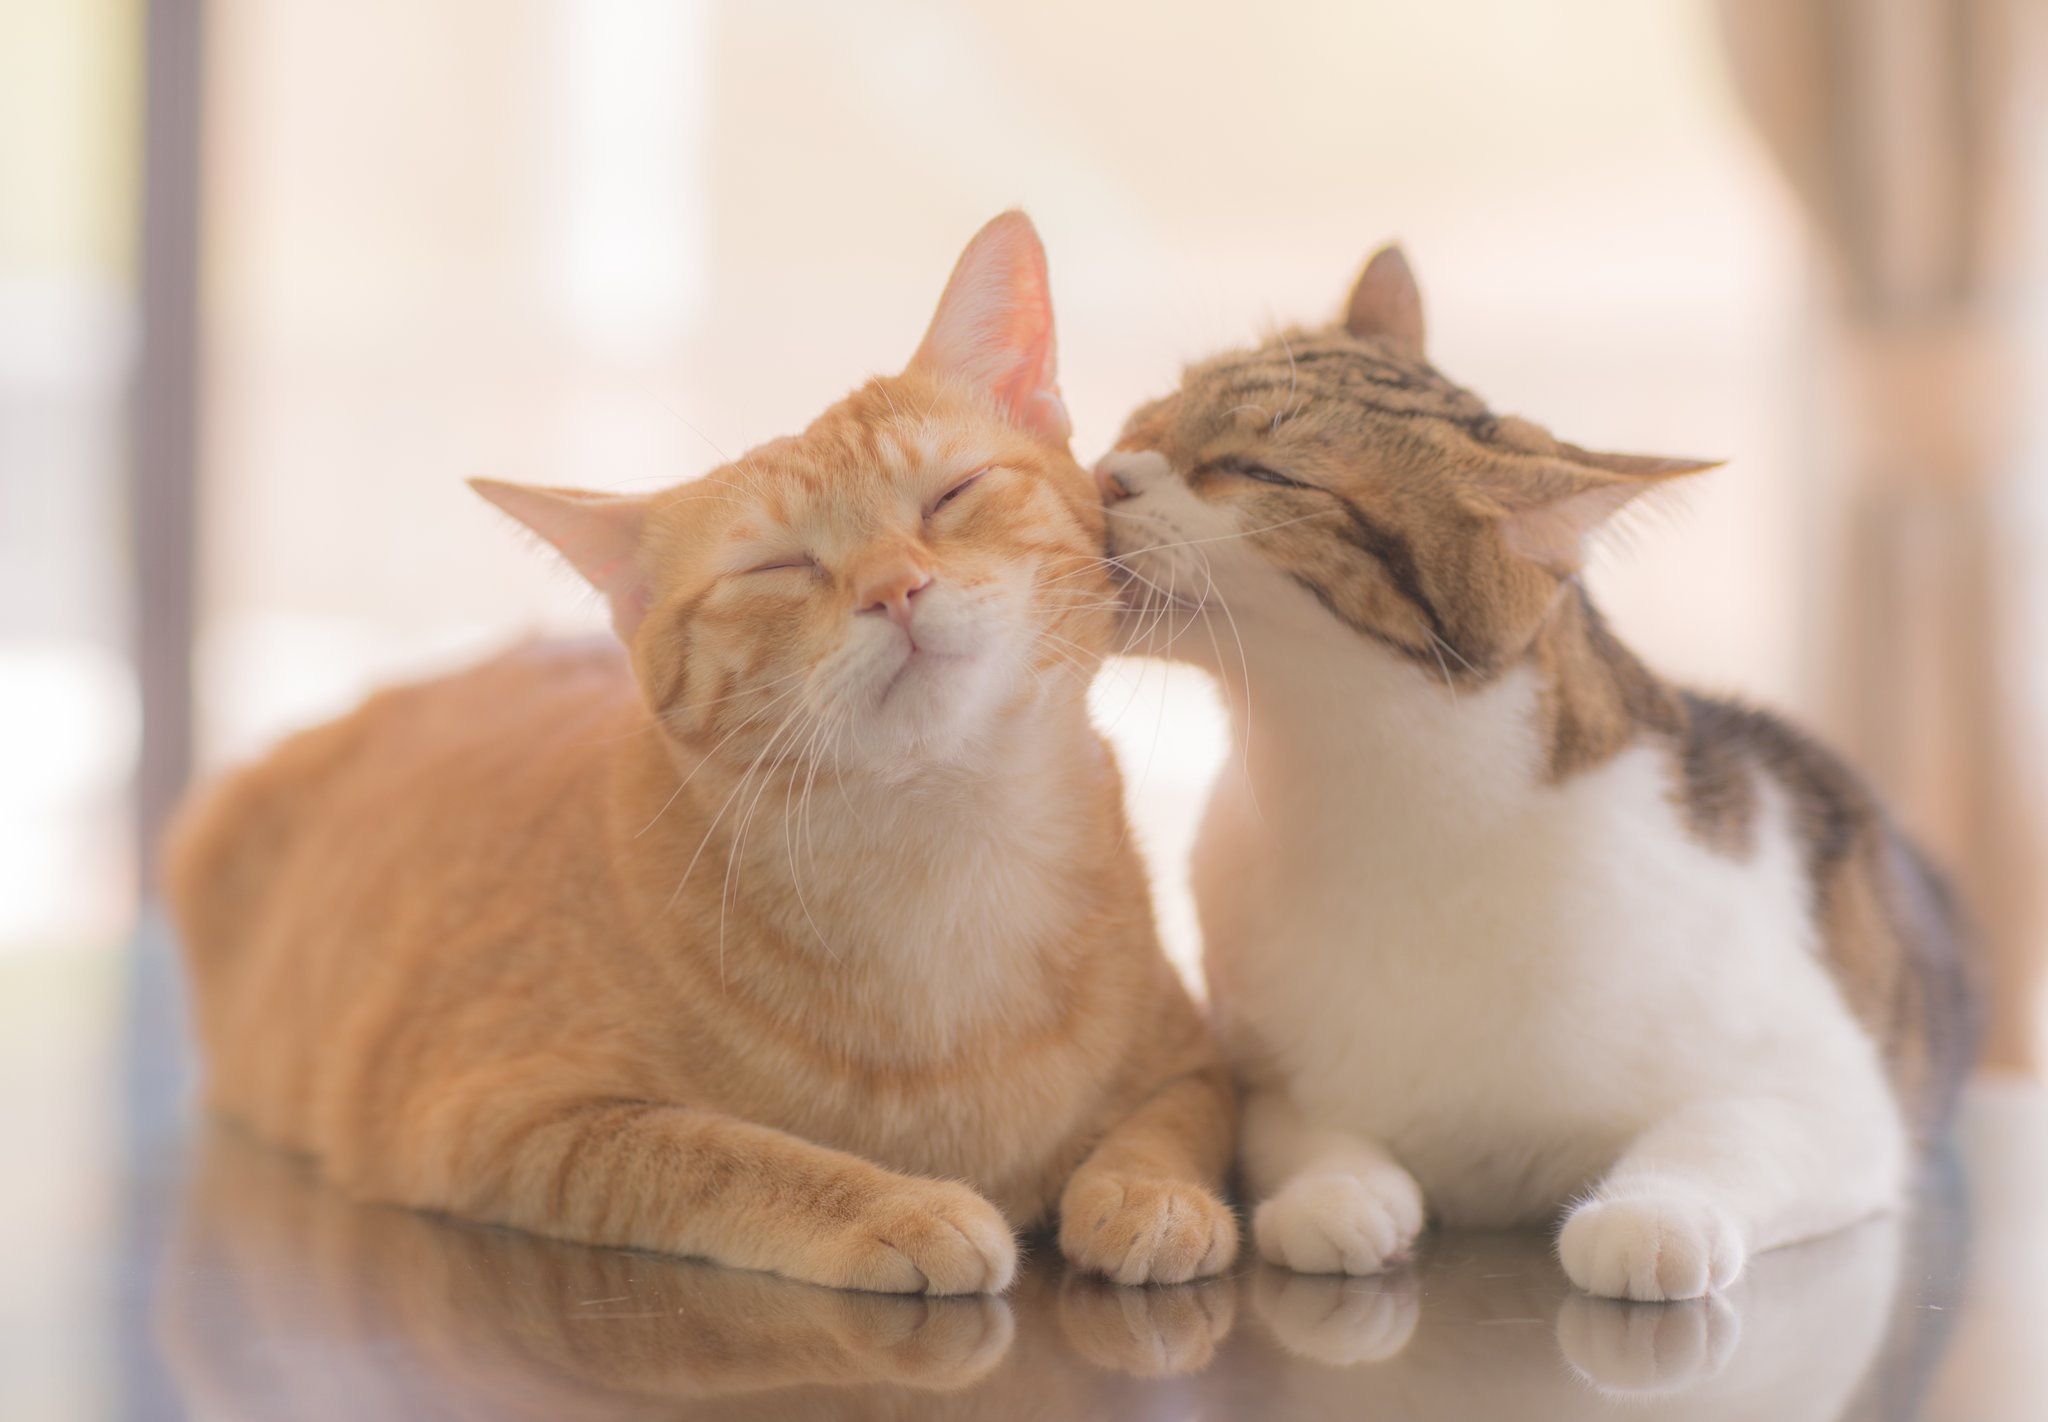 Hình 2 chú mèo hôn nhau cực đáng yêu